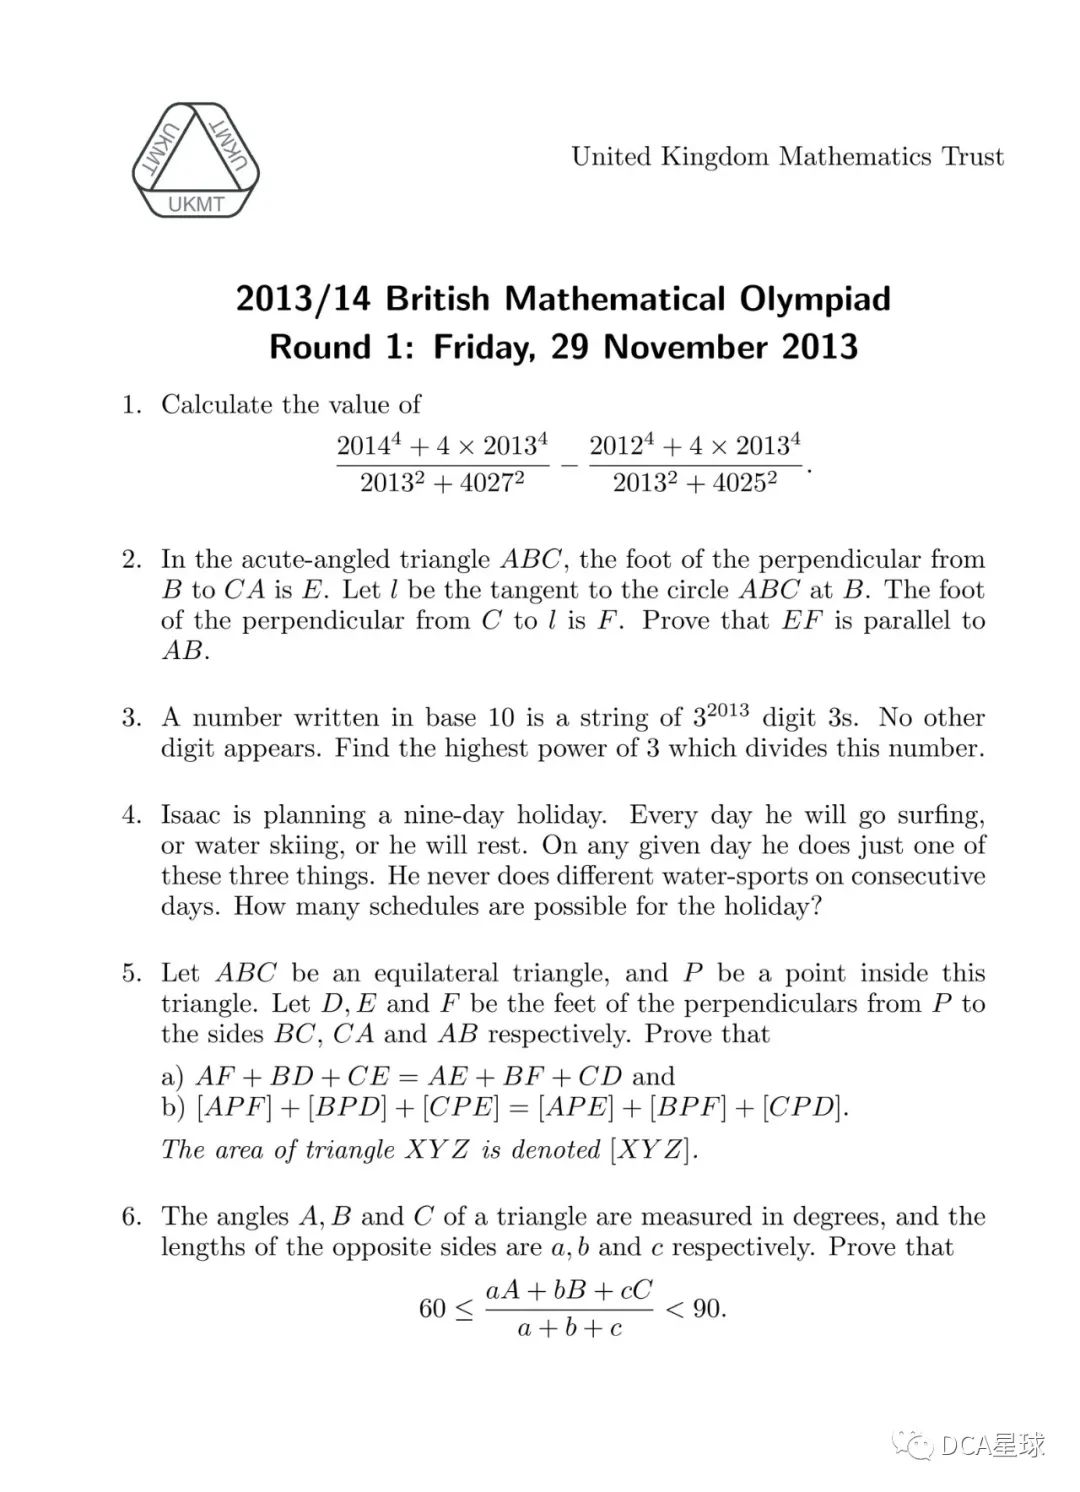 竞赛|UKMT系列SMC BMO等数学竞赛全解 21-22年